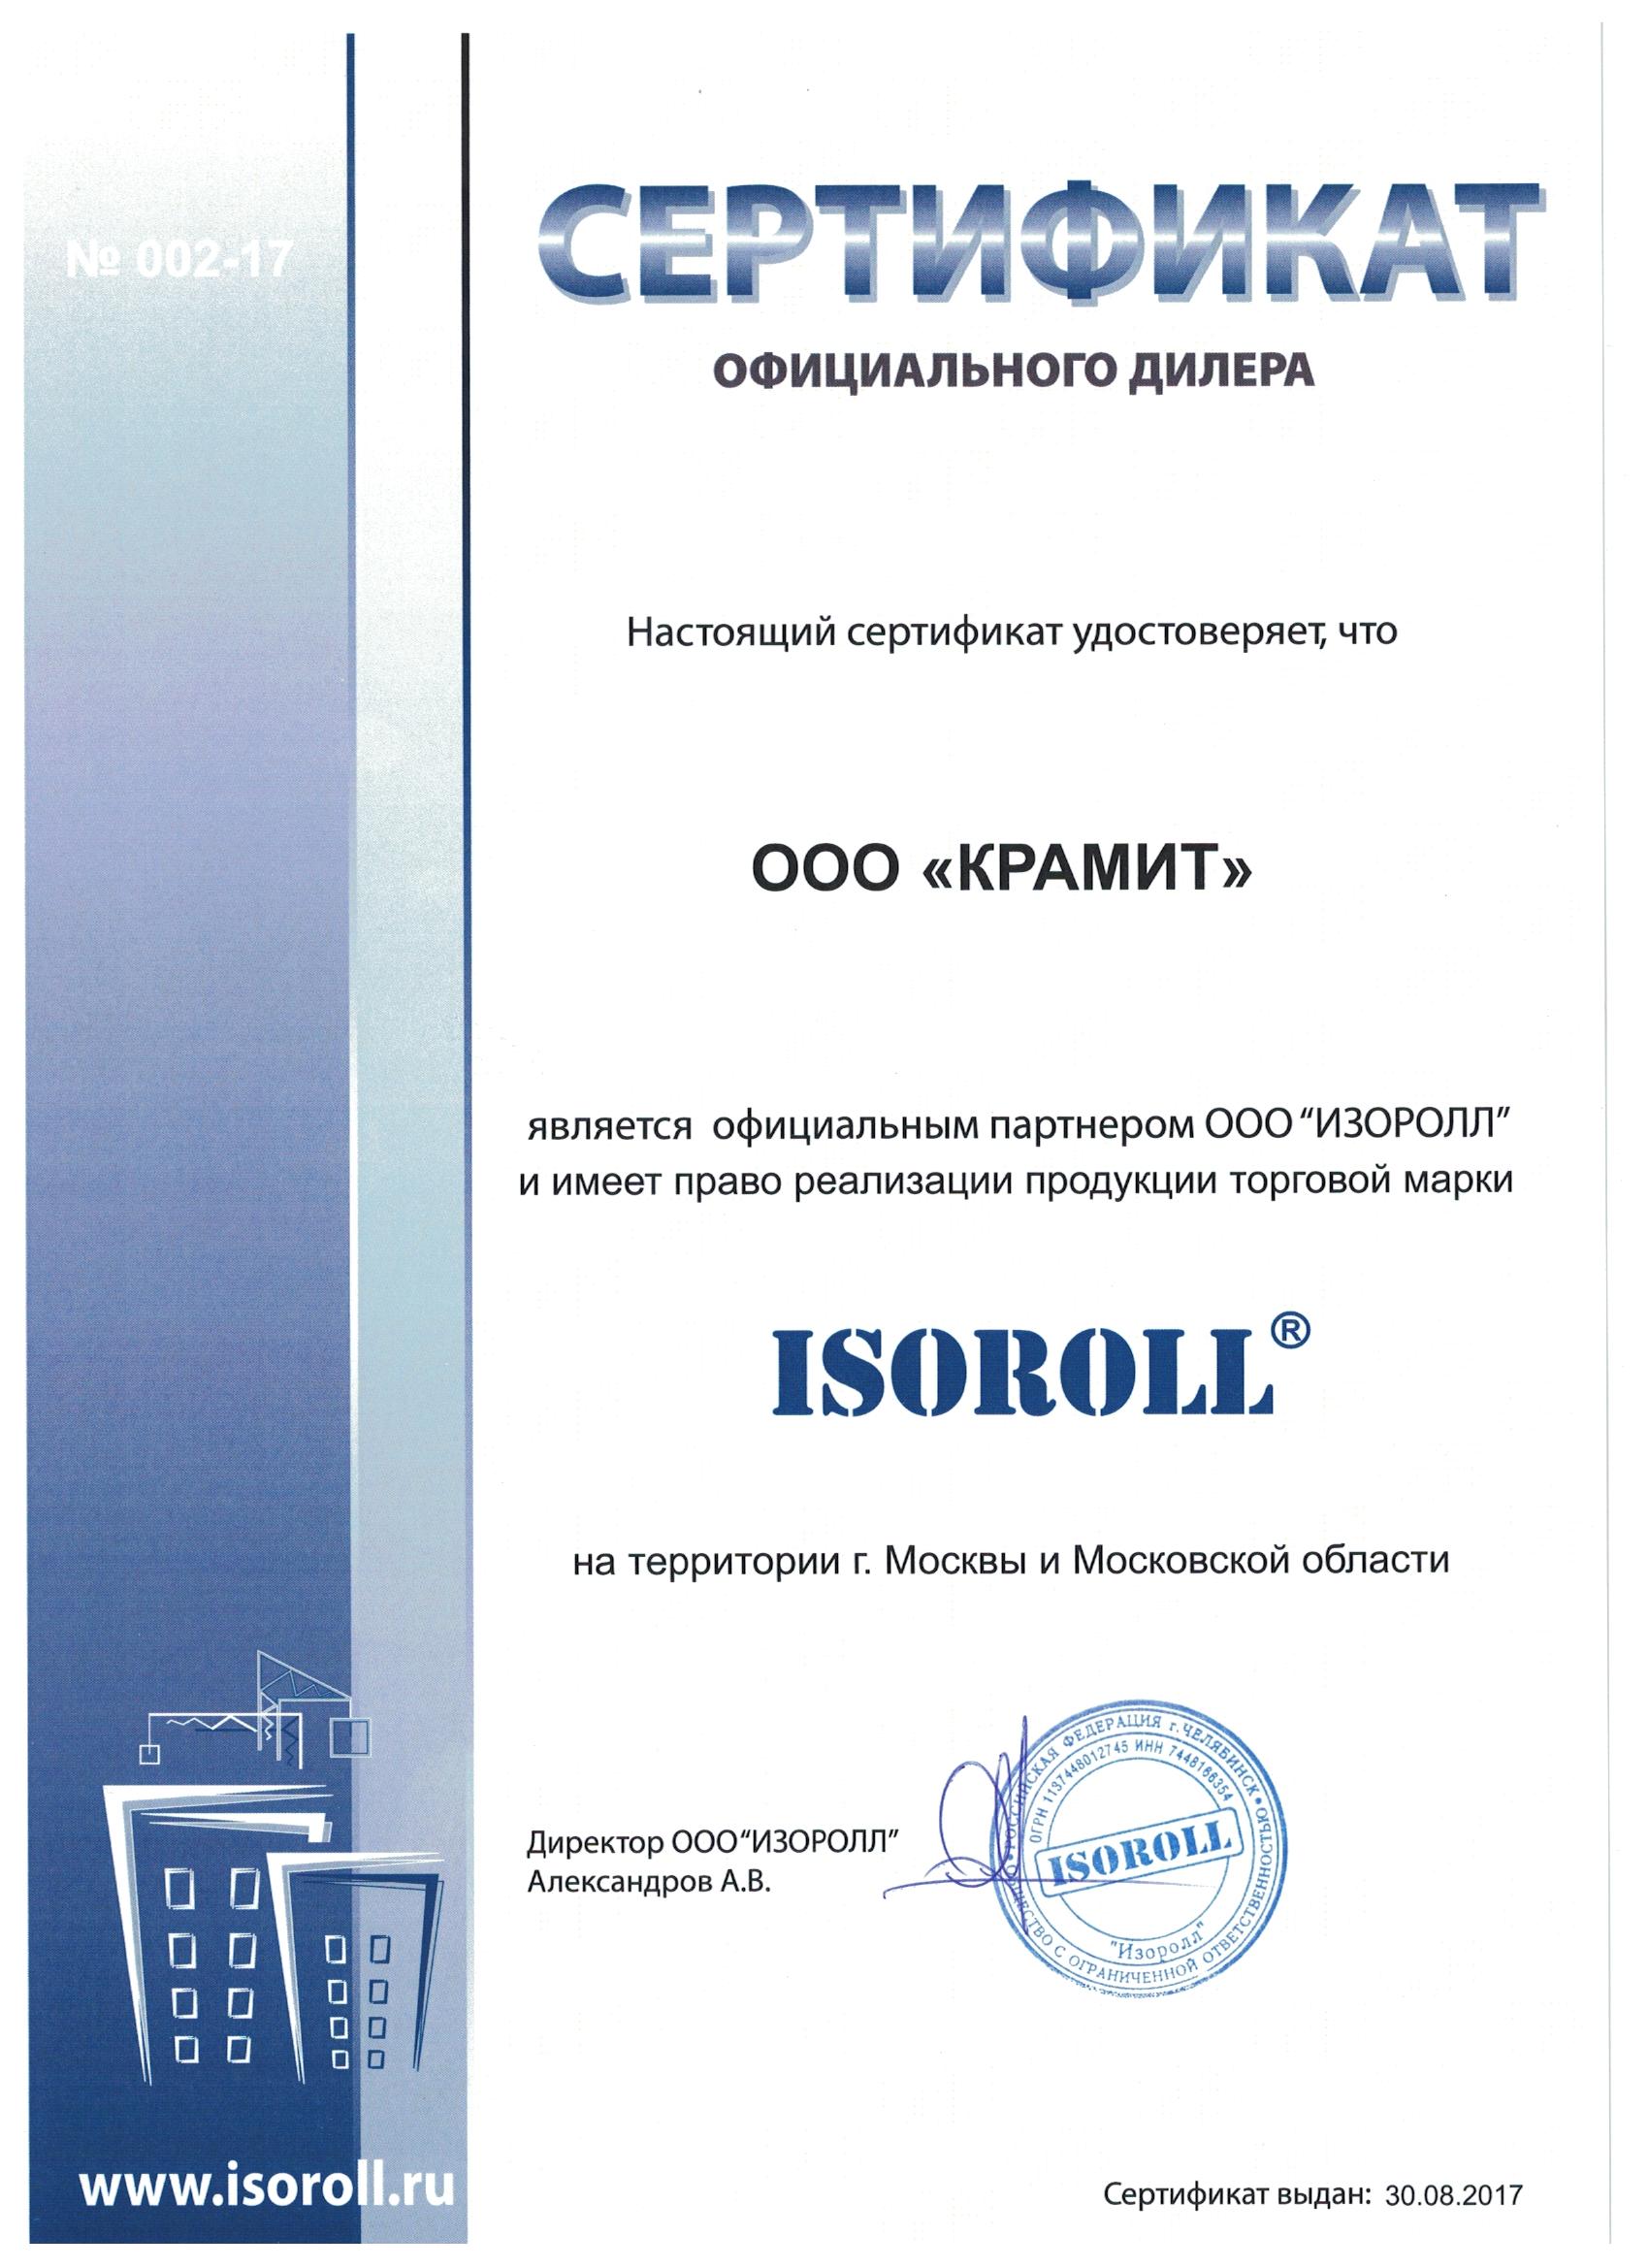 Статус официального дилера ISOROLL